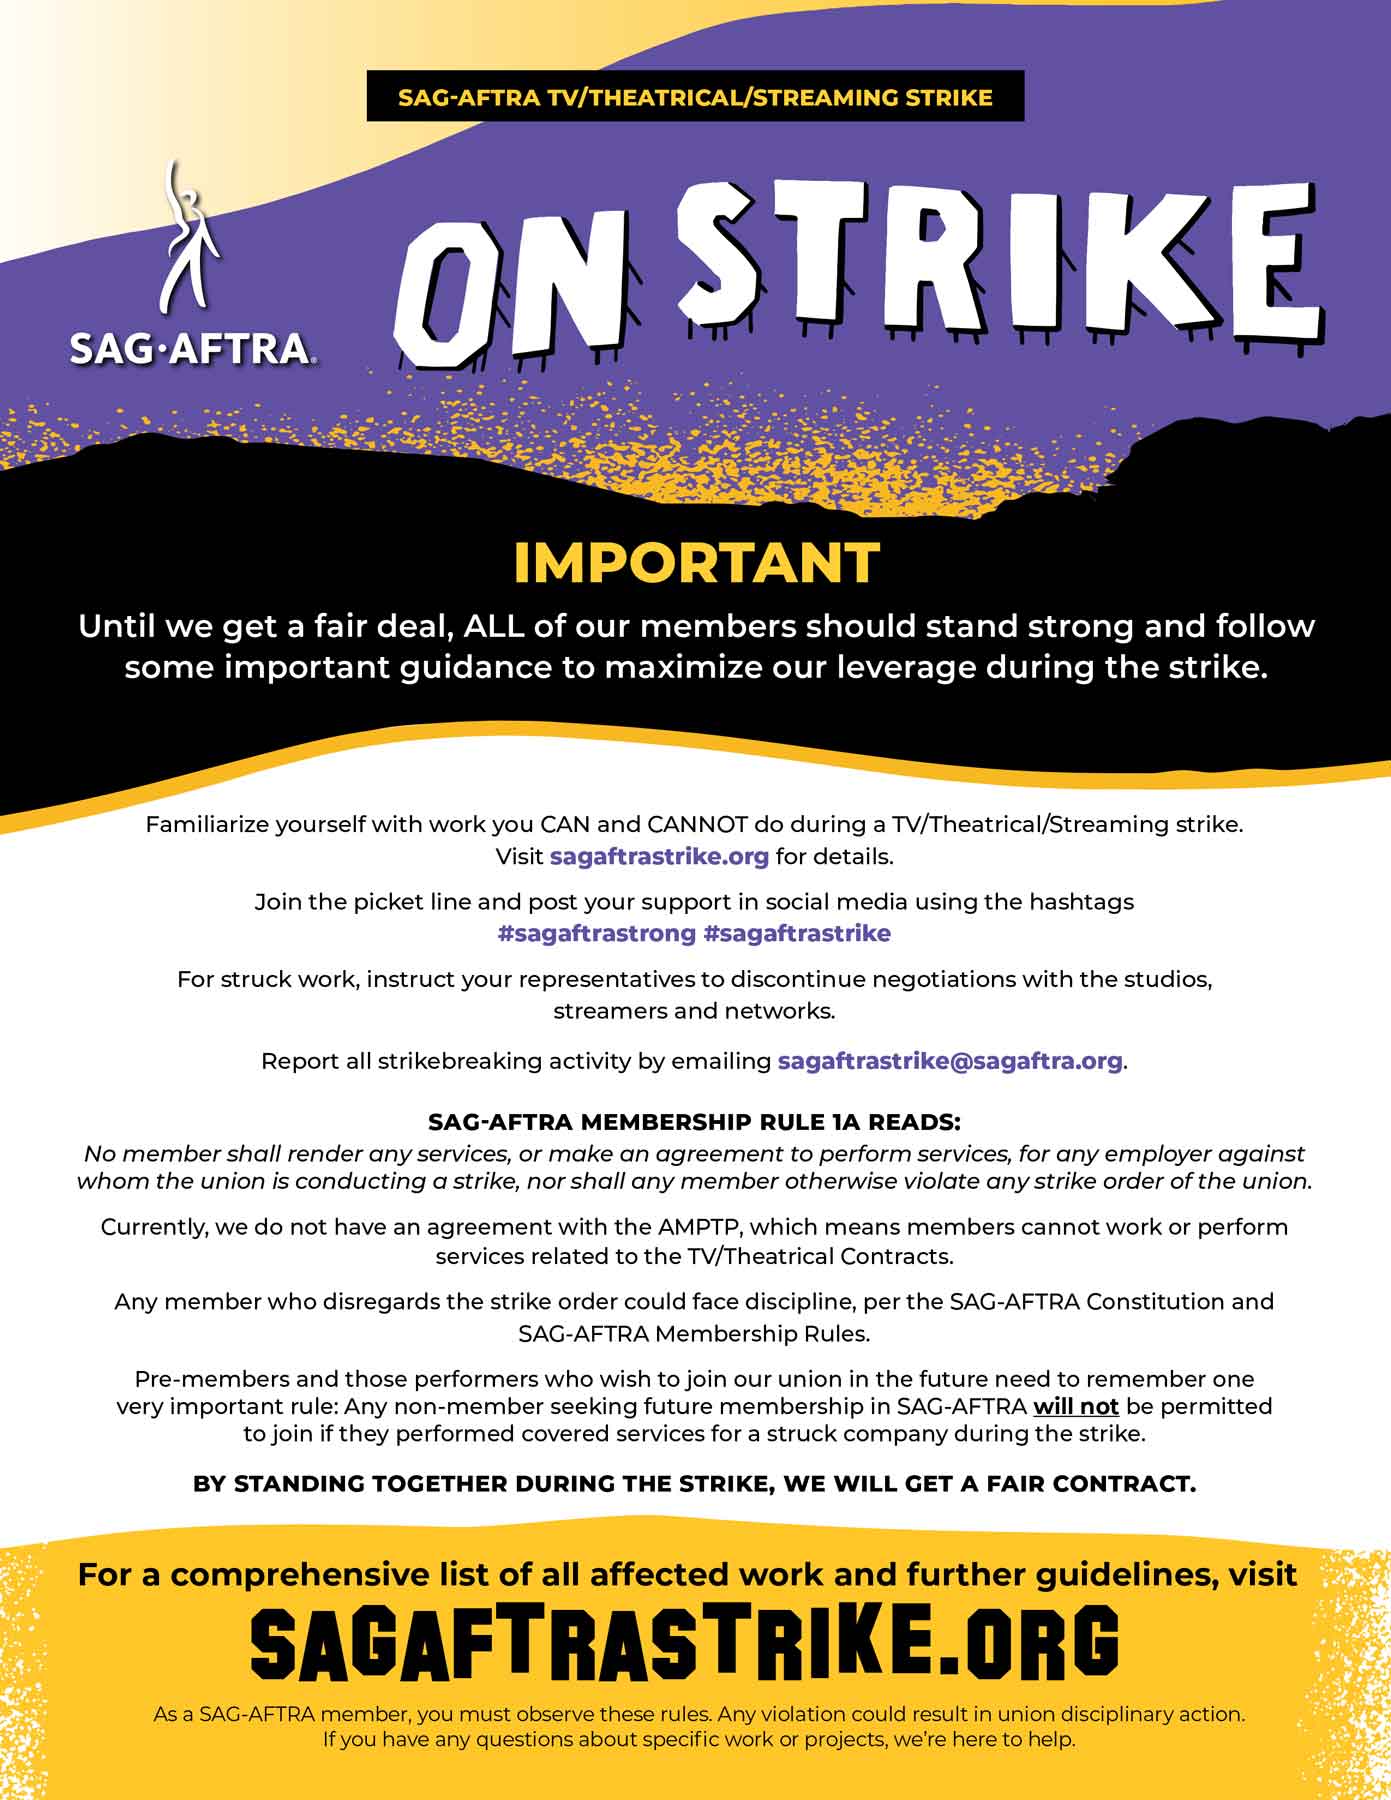 SAG-AFTRA Important Strike Information